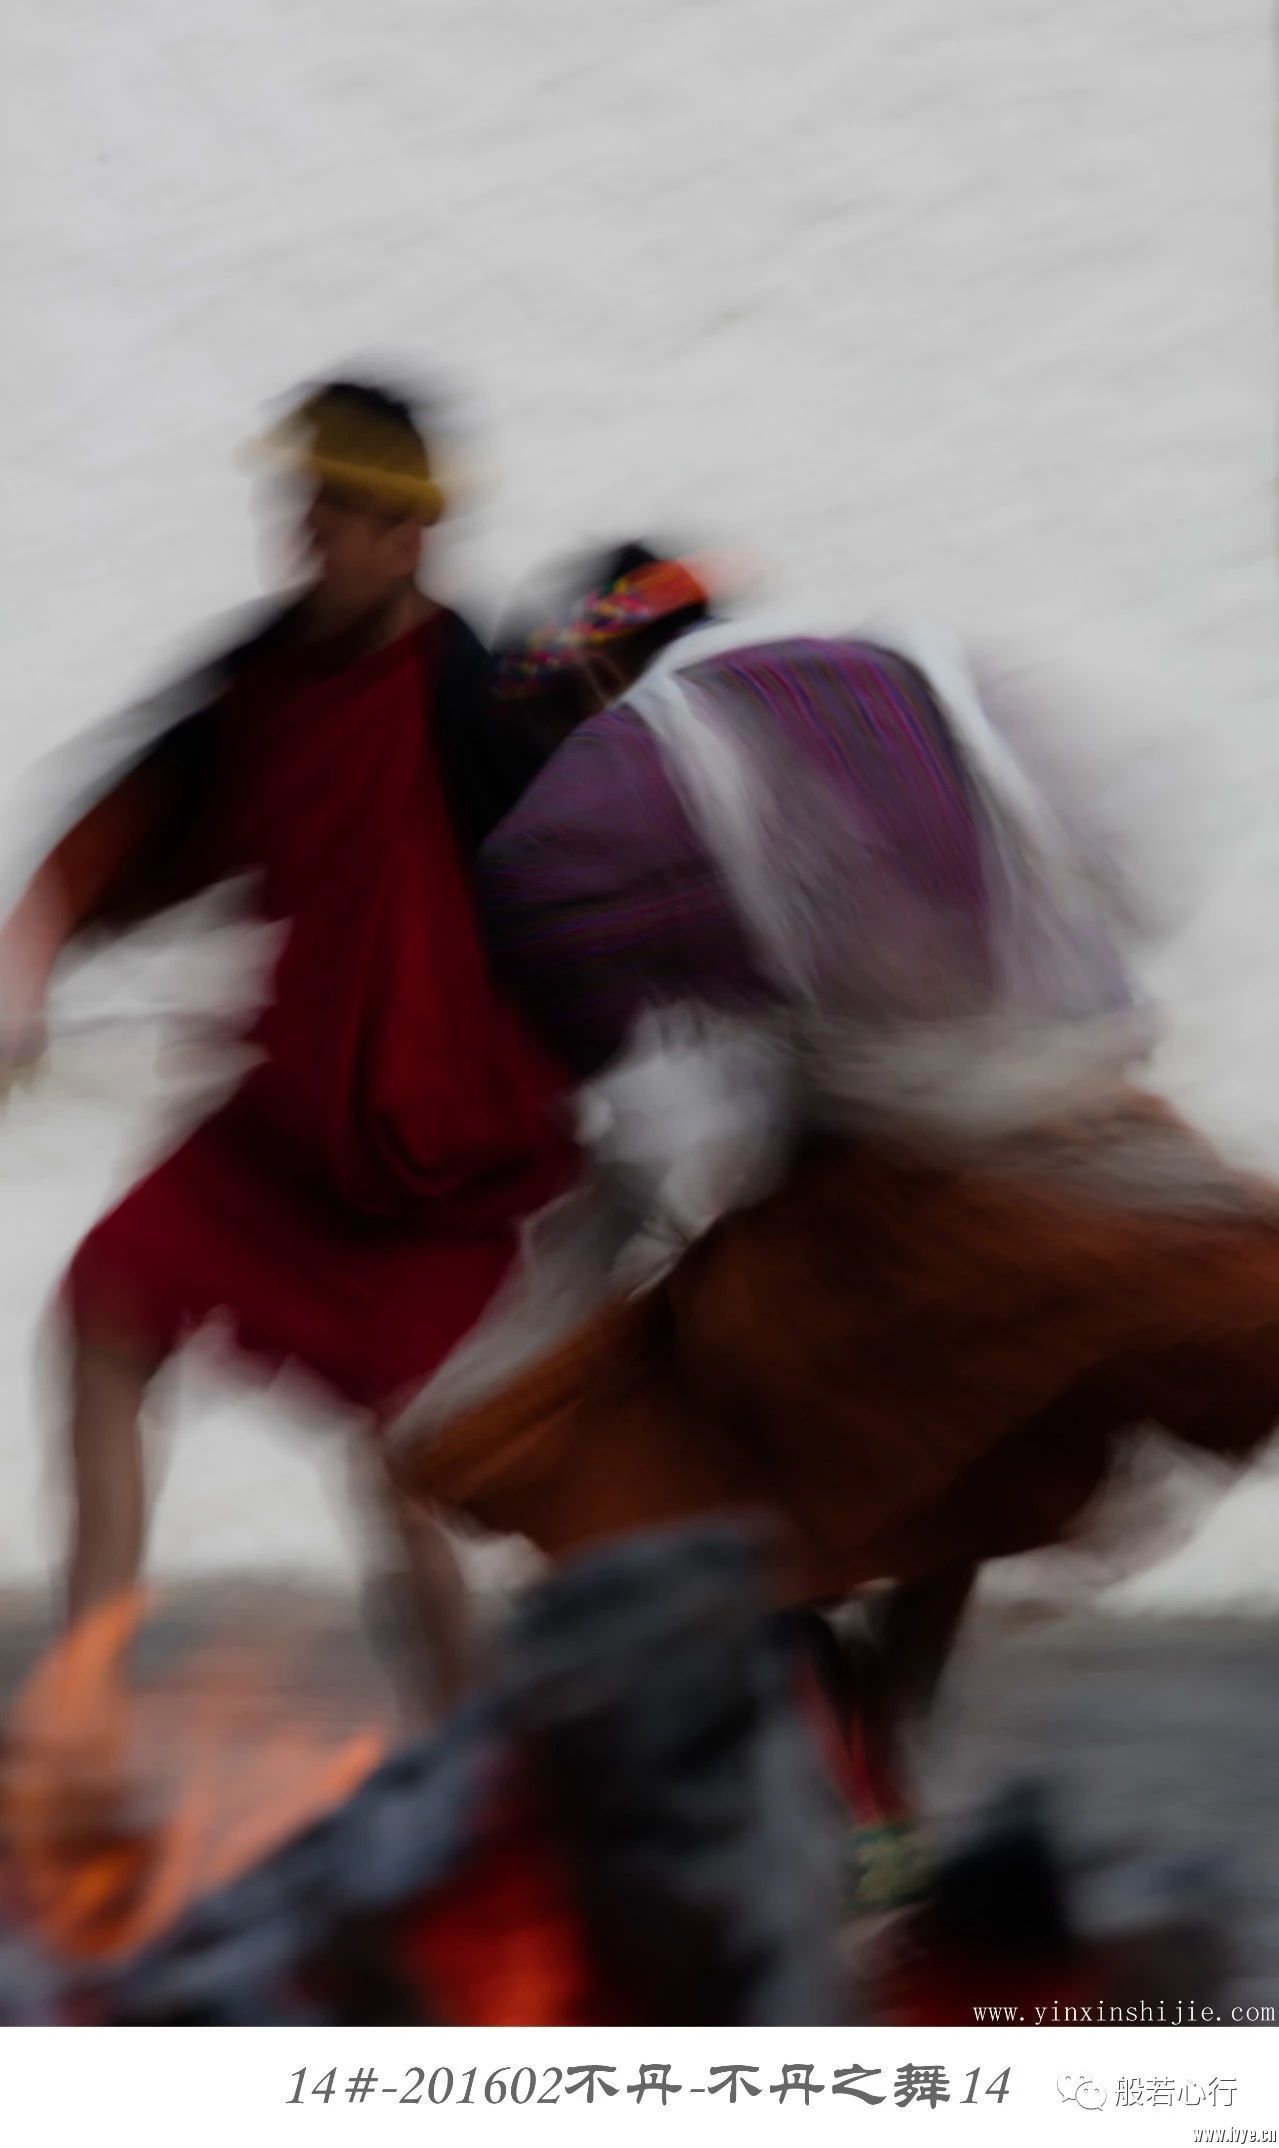 14#-201602不丹-不丹之舞14.jpg